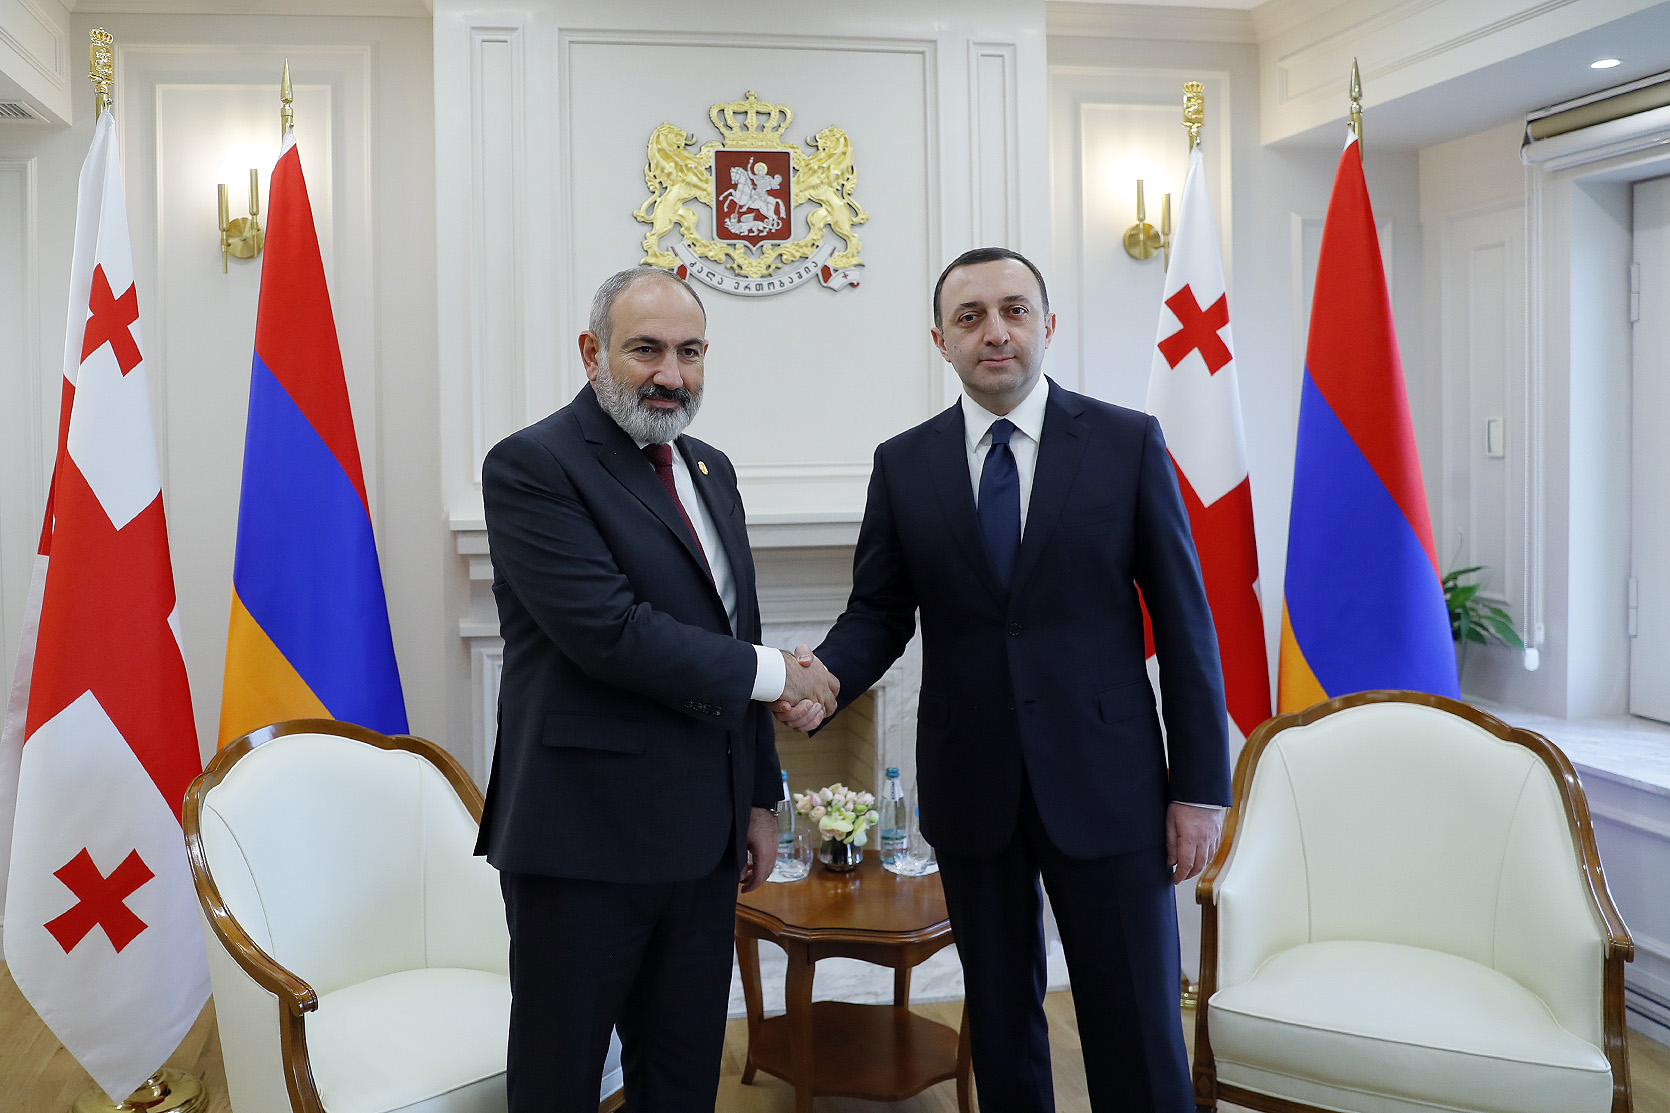 Пашинян и Гарибашвили затронули происходящие в регионе процессы